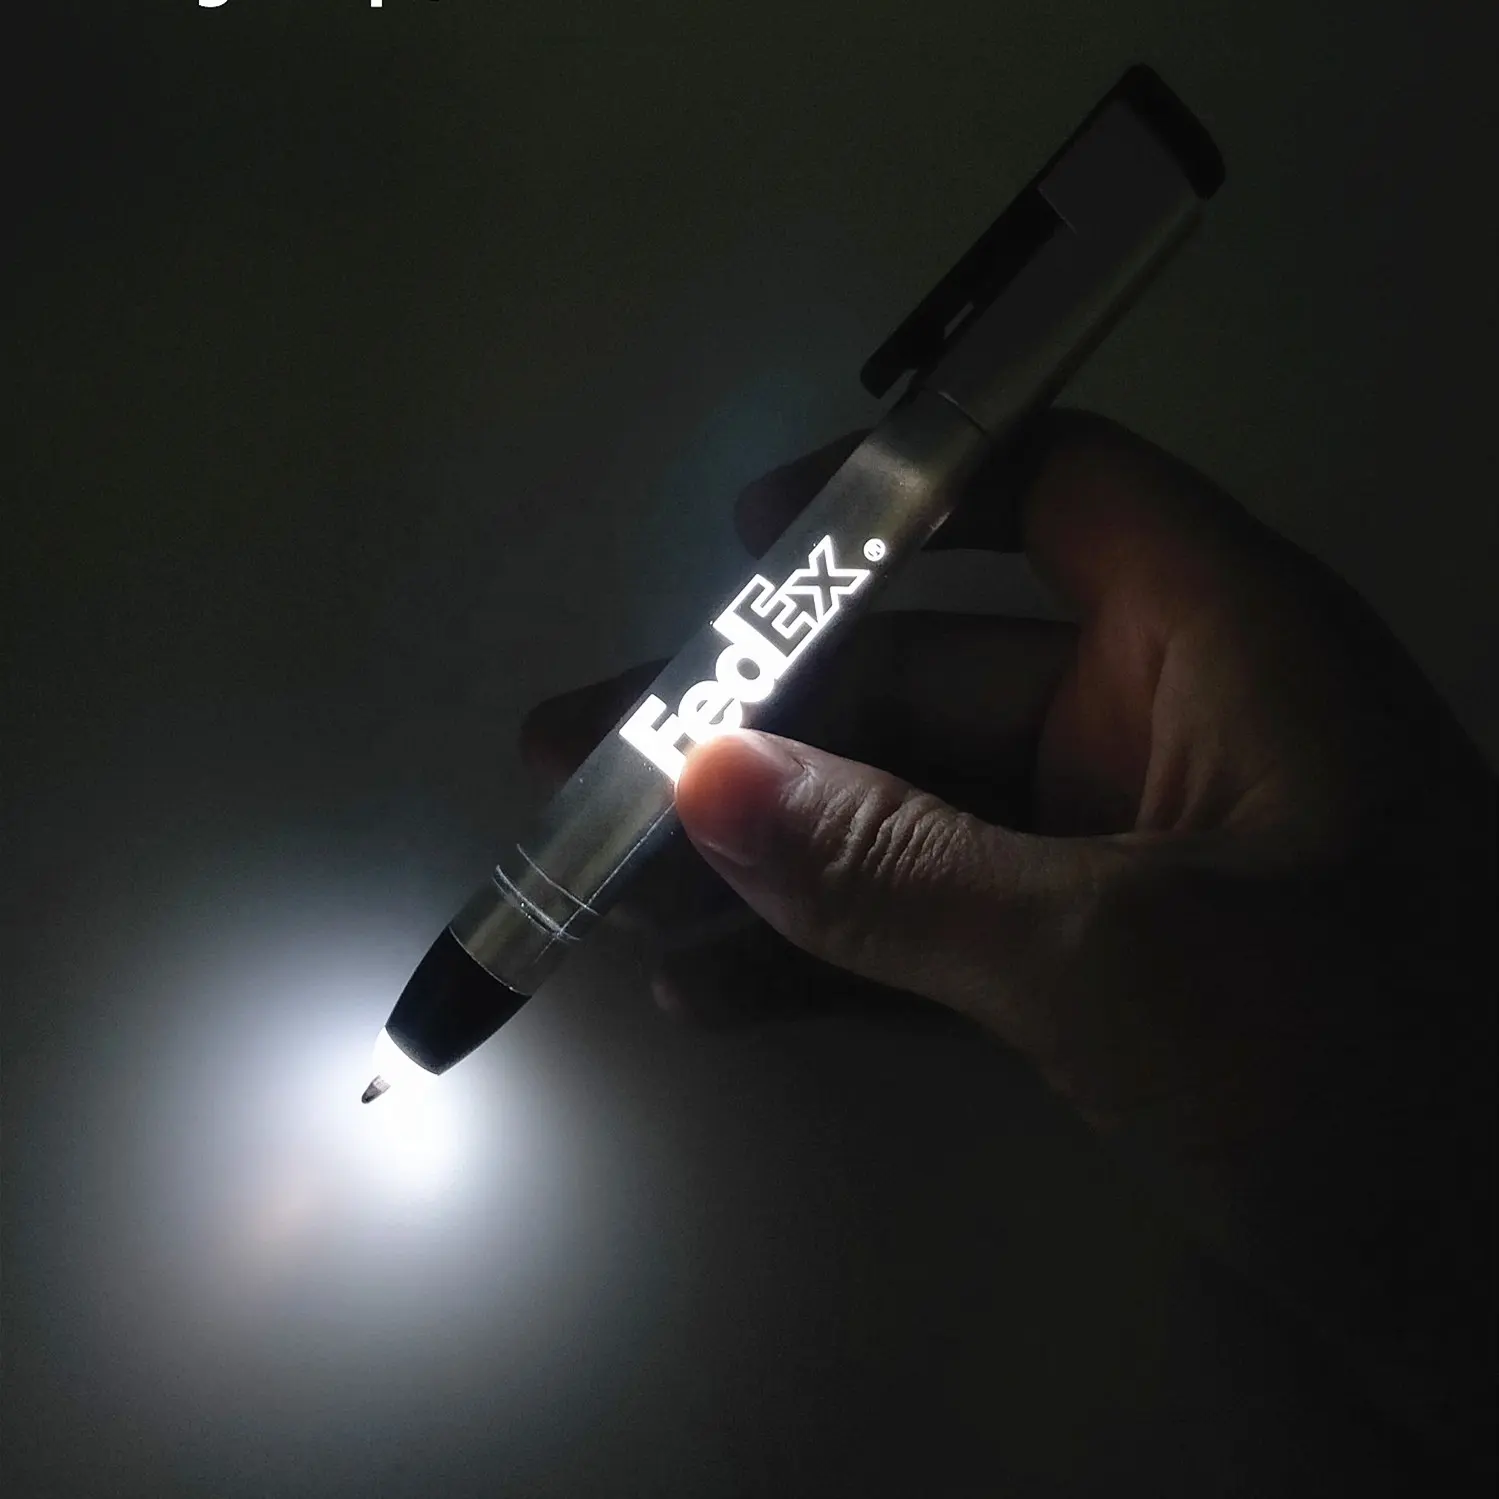 ปากกาหัวลูกบอลมียี่ห้อแกะสลักสำหรับธุรกิจ,ปากกาสไตลัสปลายปากกามีไฟ Led ระบบสัมผัสปรับแสงได้หลายฟังก์ชันตามต้องการ